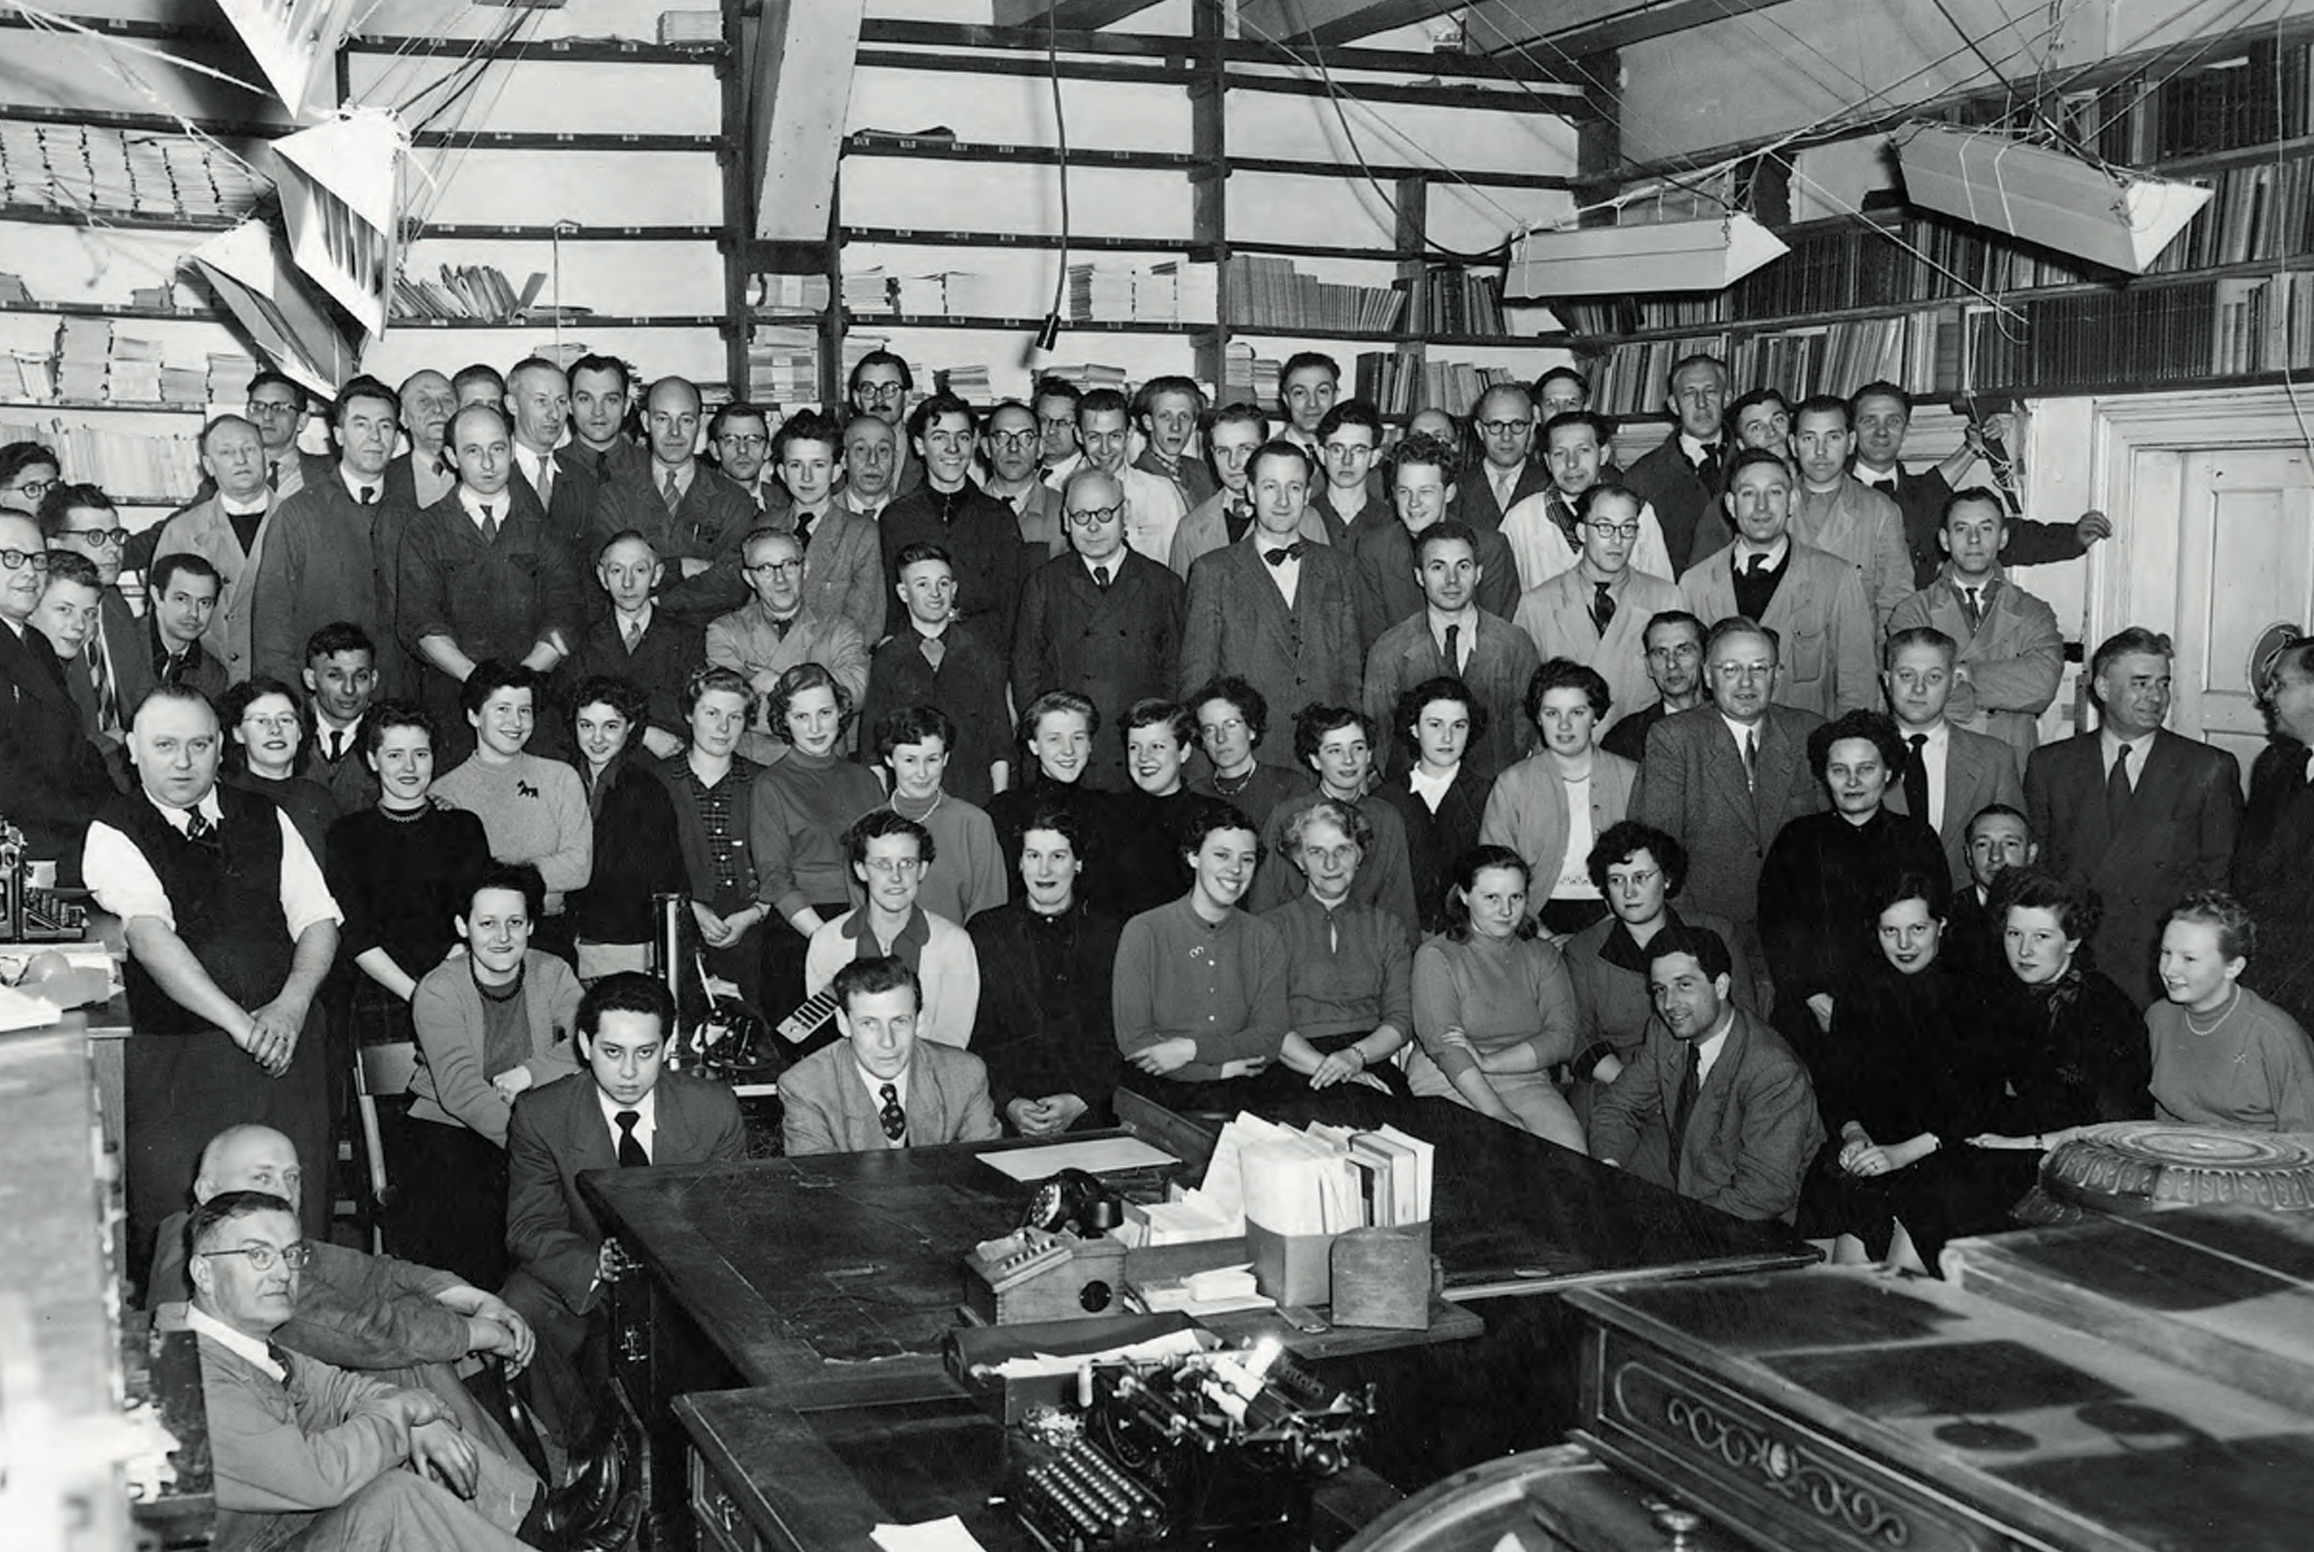 Schwarz-Weiß-Fotografie von etwa neunzig Personen, die für ein Foto posieren, wobei die Frauen im Vordergrund sitzen